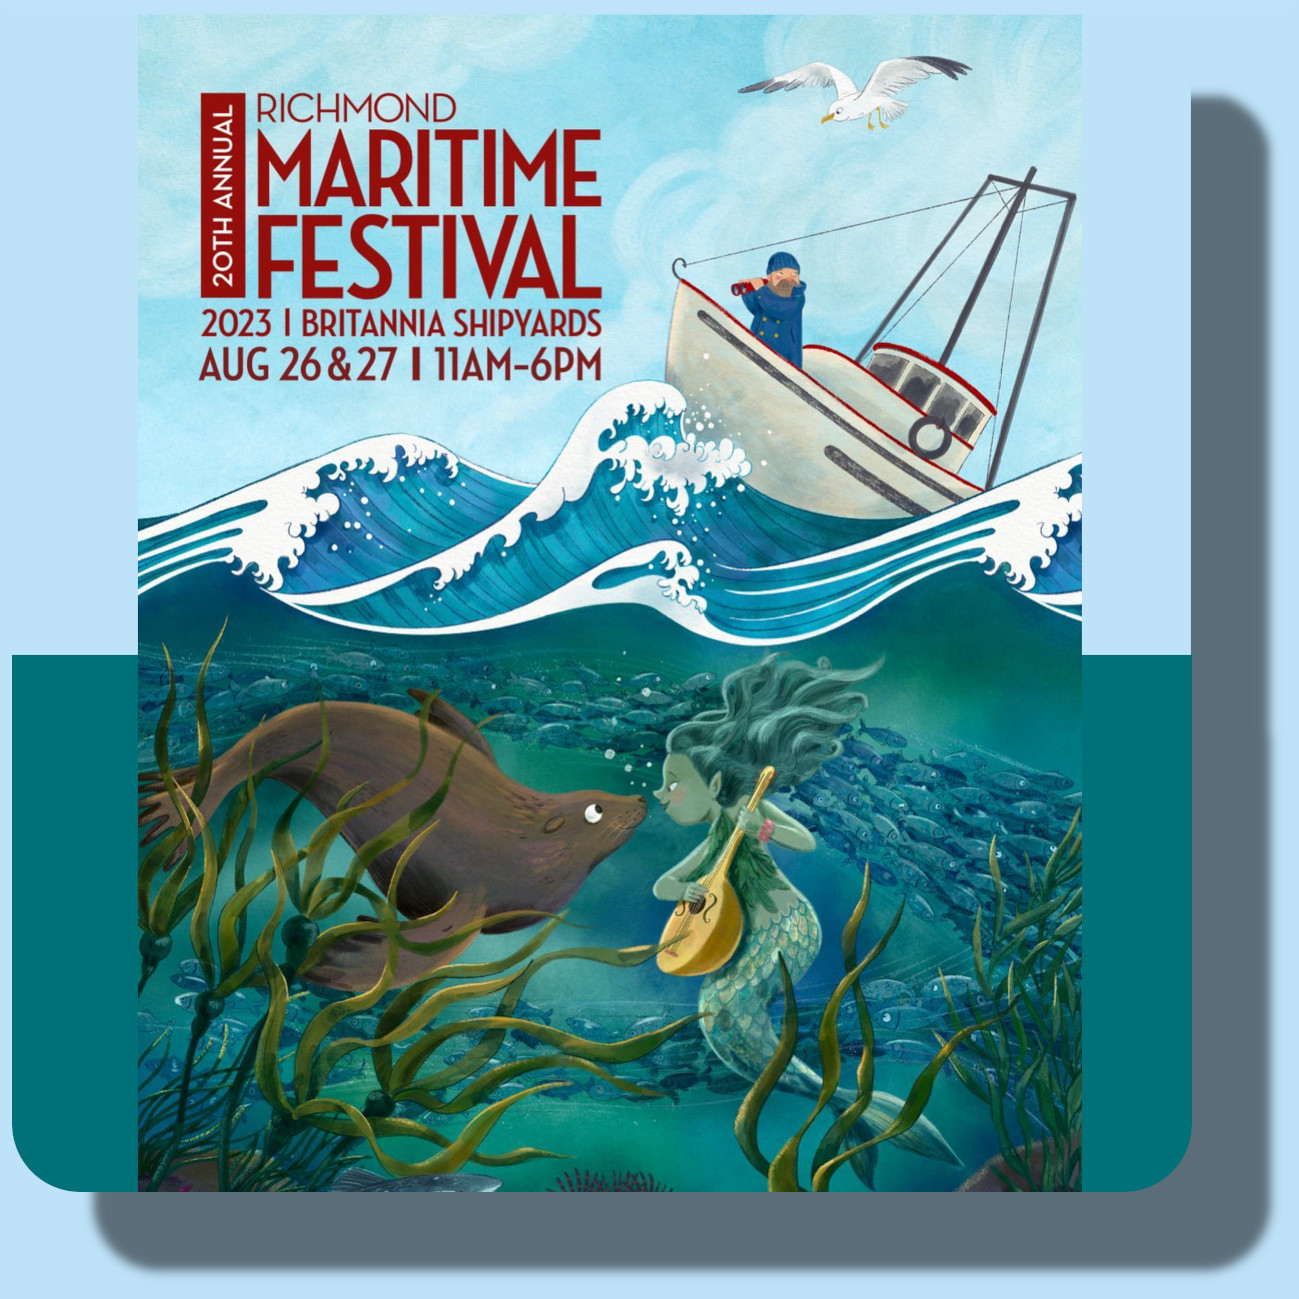 2023 Richmond Maritime Festival: Event Details, Location, Date